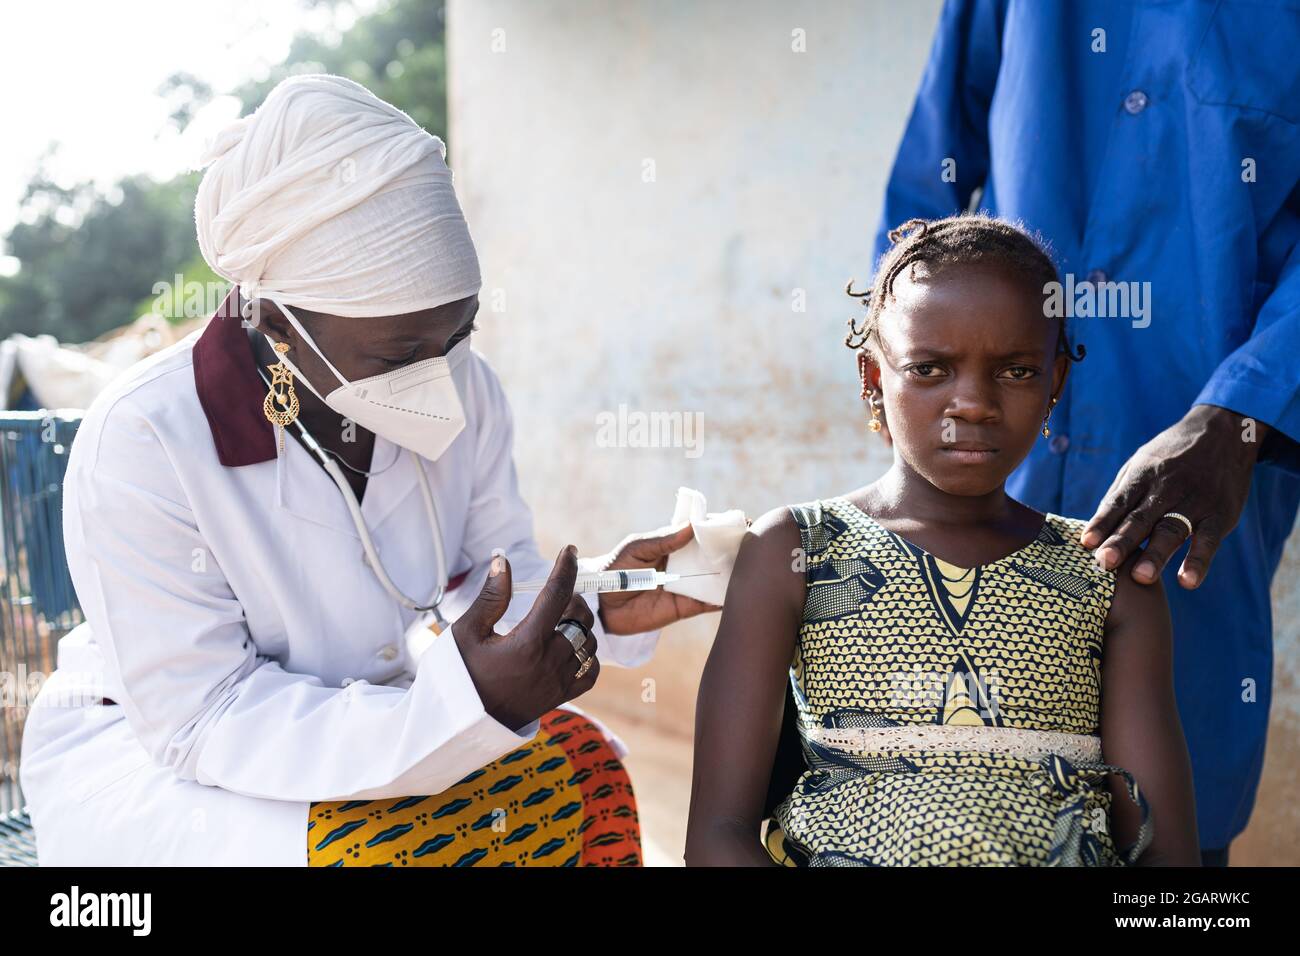 In questa immagine, una bambina africana preoccupata sta ricevendo una vaccinazione contro l'influenza da un infermiere nero con maschera protettiva per il viso Foto Stock